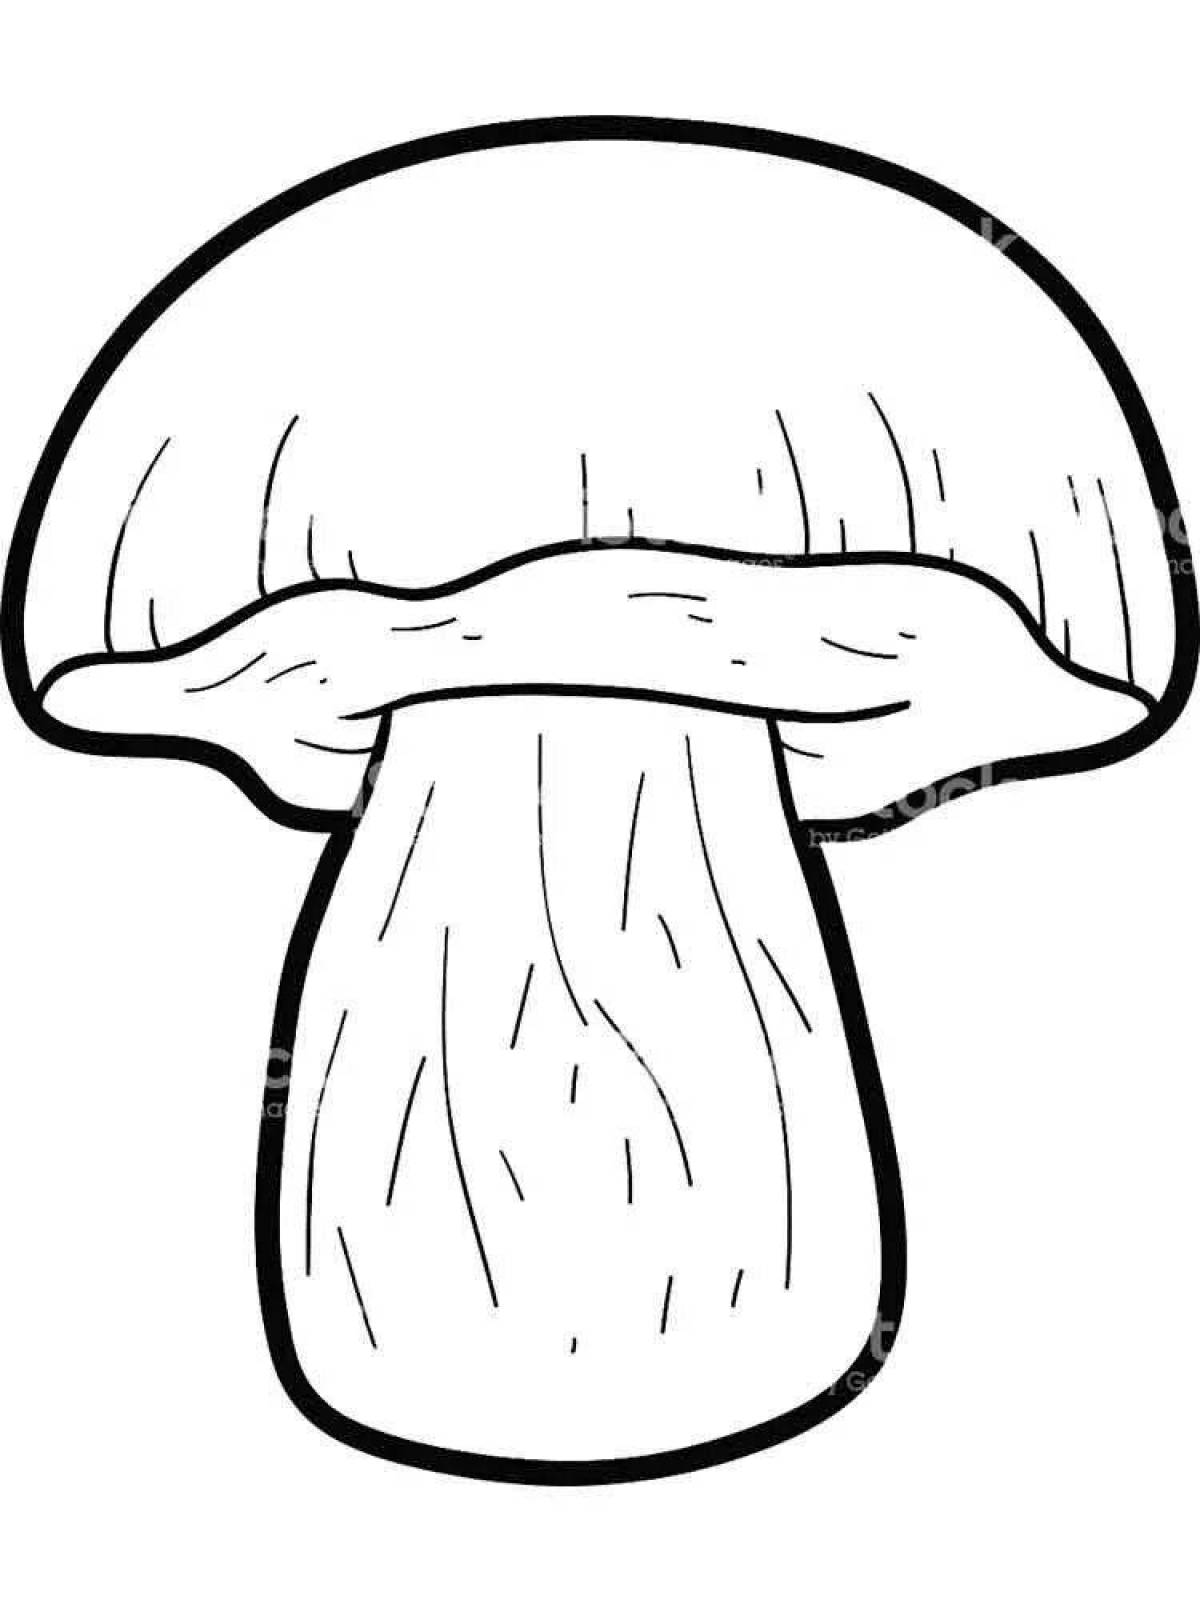 Coloring page stylish mushroom boletus